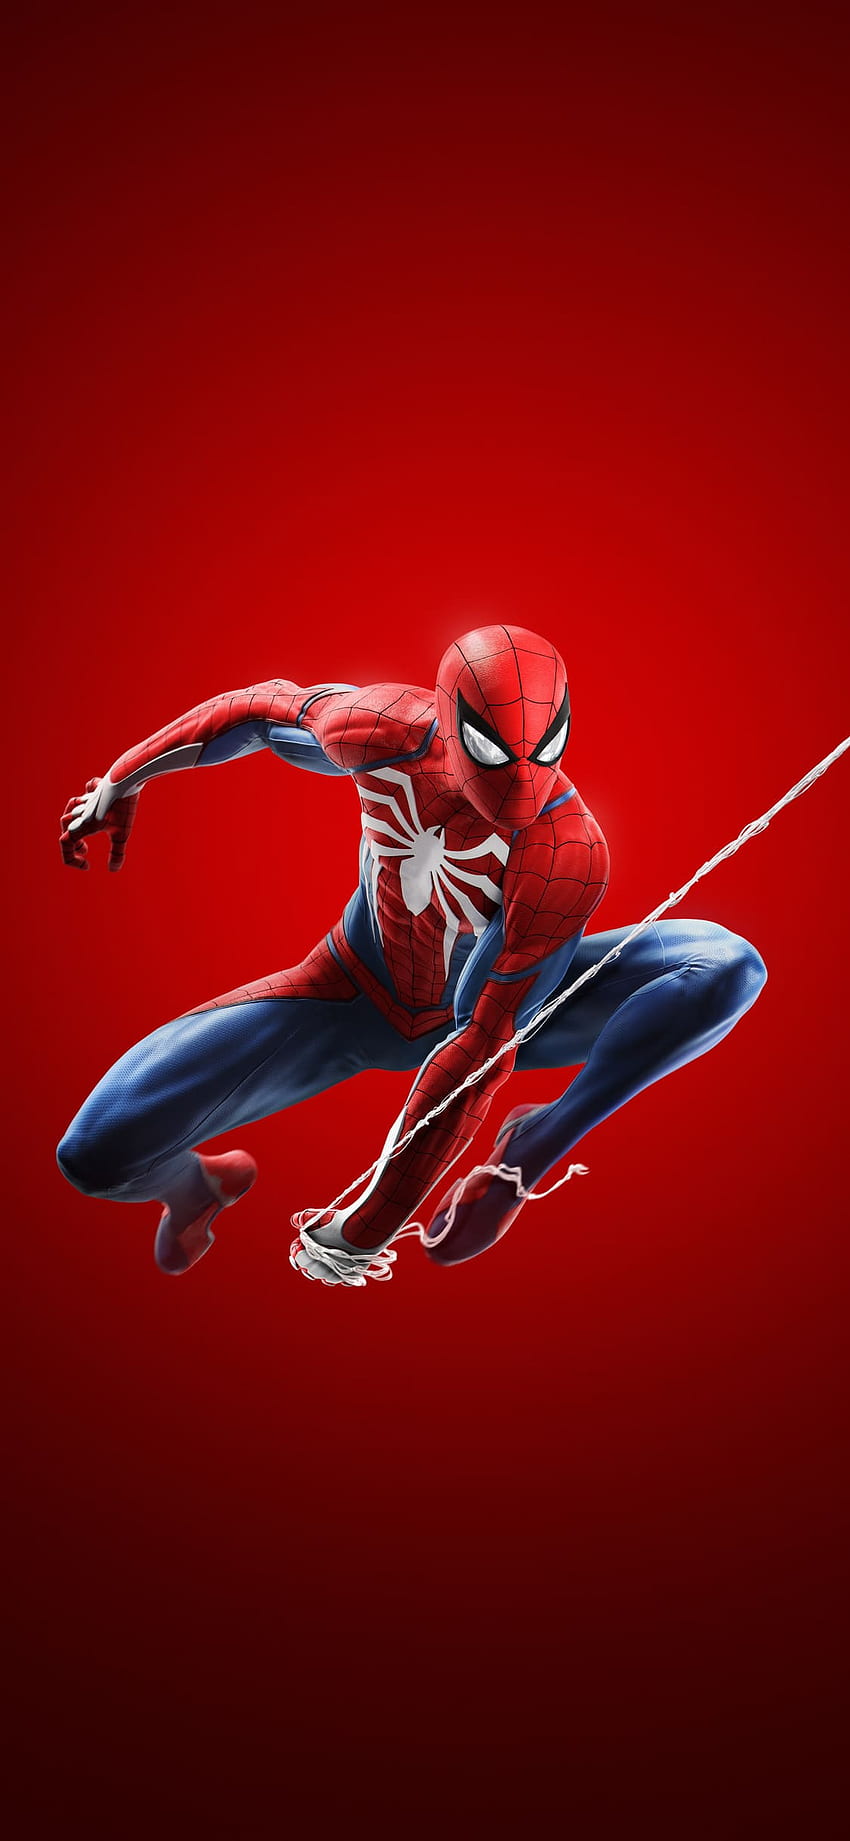 The Spiderman 4K IPhone Wallpaper HD IPhone Wallpapers Wallpaper Download   MOONAZ